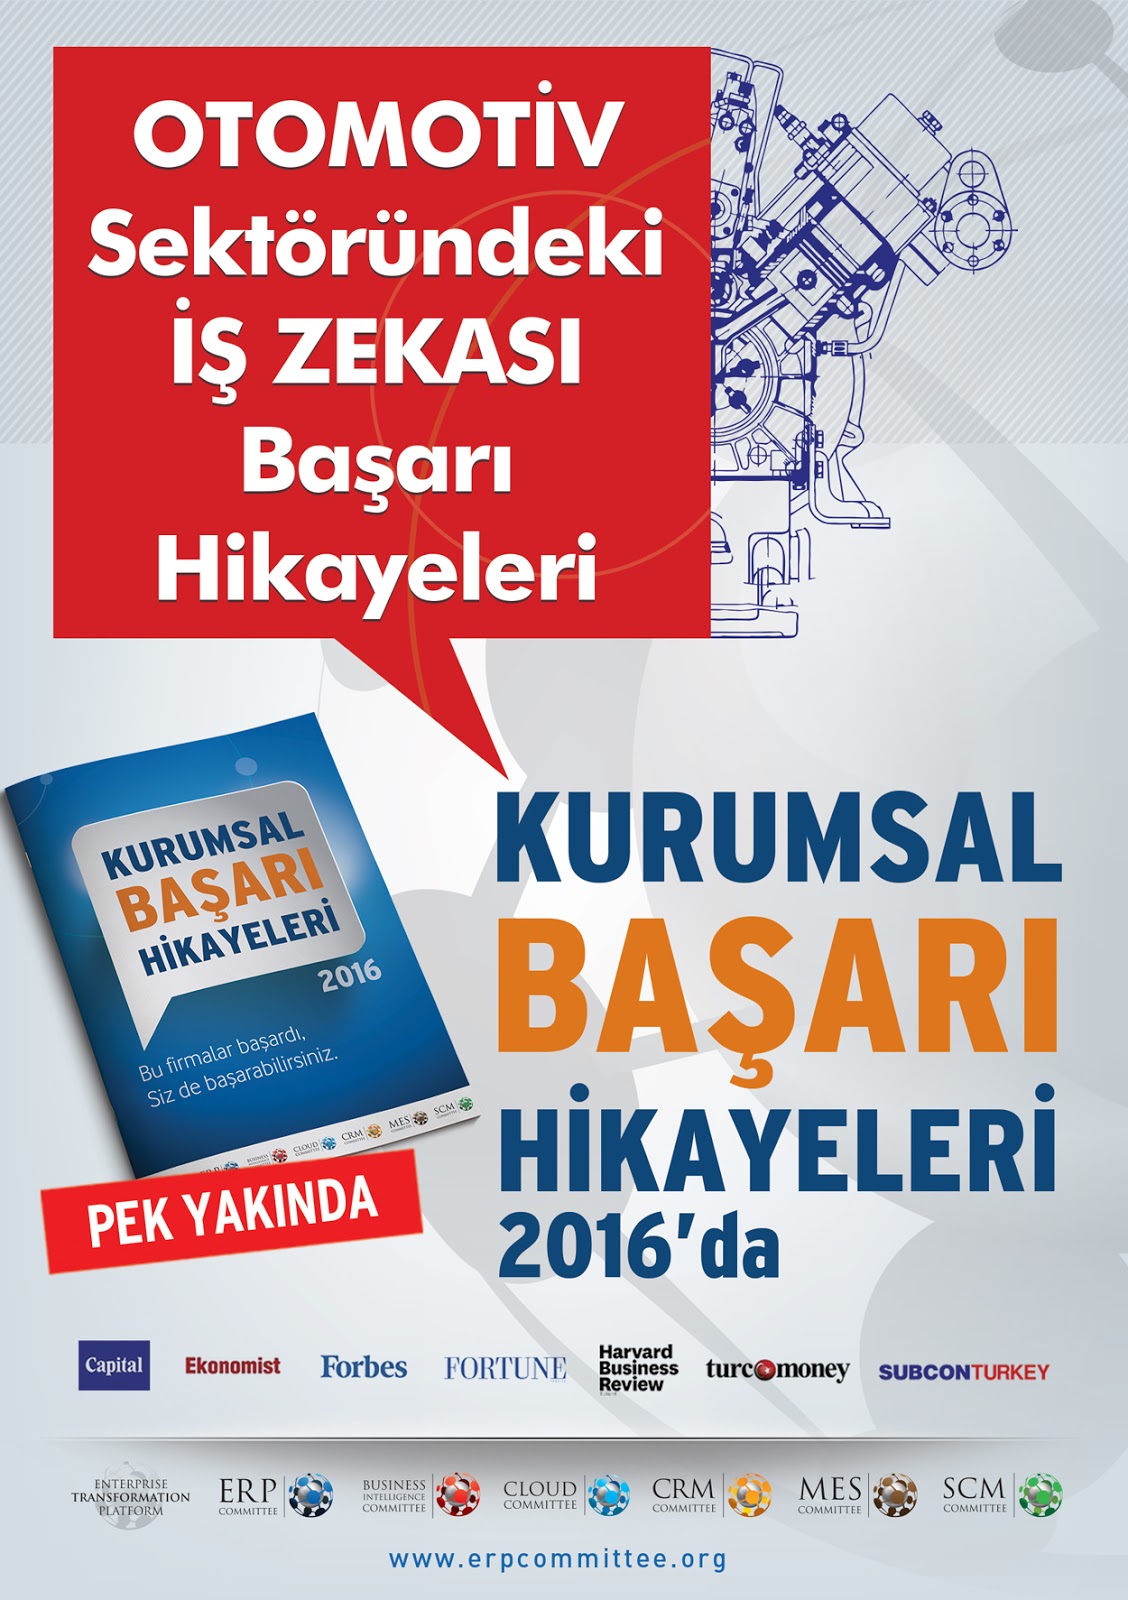 Erp Committee Turkey Otomotiv Sektoru Ndeki Is Zekasi Ve Karar Destek Sistemleri Basari Hikayeleri Kurumsal Basari Hikayeleri 2016 Da